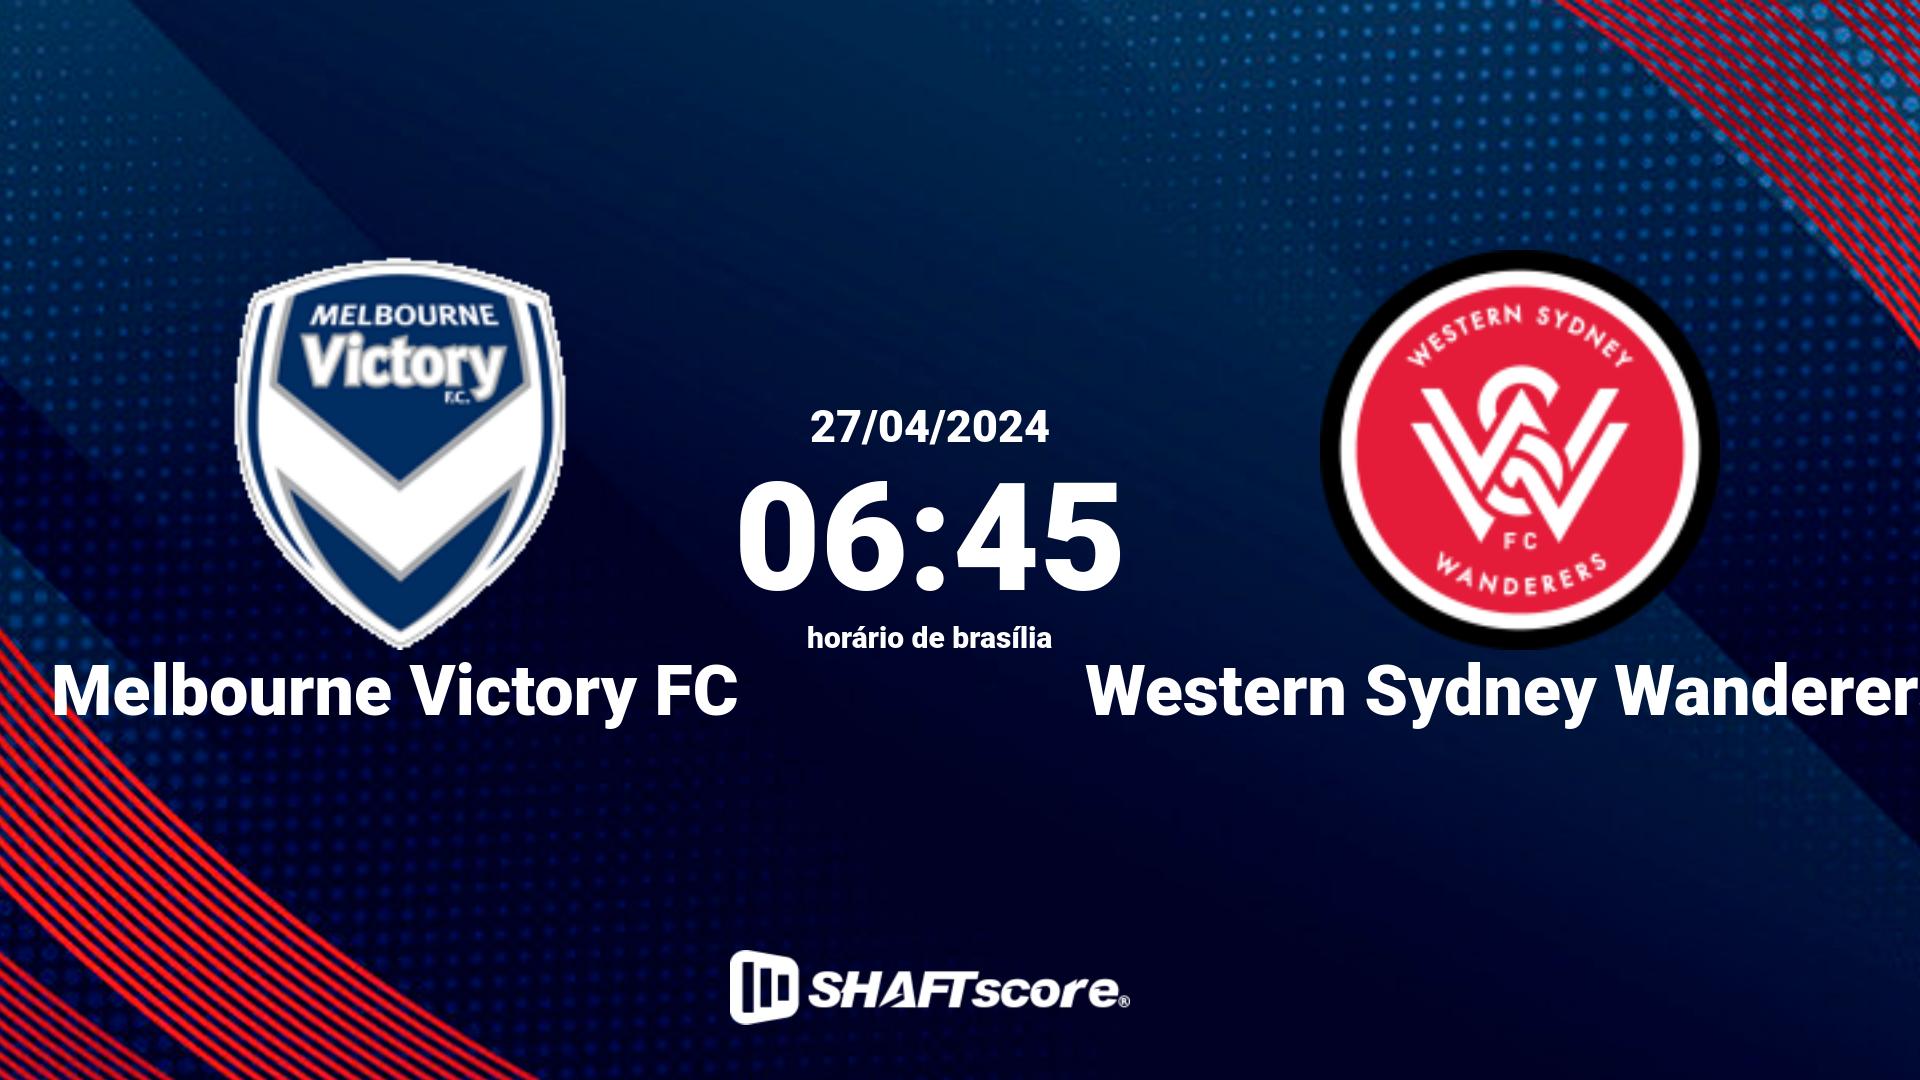 Estatísticas do jogo Melbourne Victory FC vs Western Sydney Wanderers 27.04 06:45